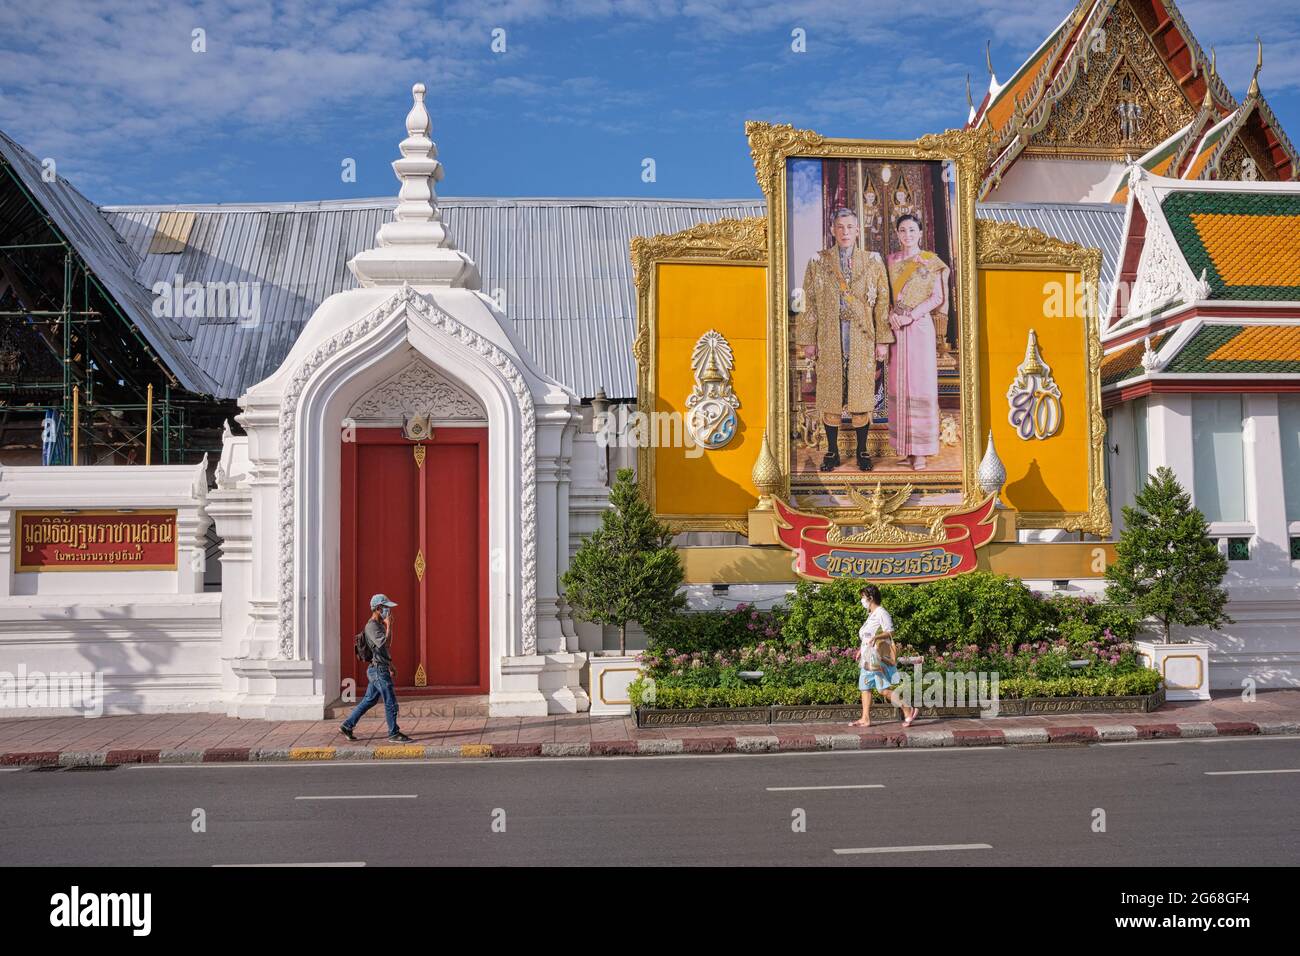 Piétons passant sous un grand portrait du roi Maha Vajiralongkorn et de la reine Suthida de Thaïlande, érigée à (temple) Wat Suthat, Bangkok, Thaïlande Banque D'Images